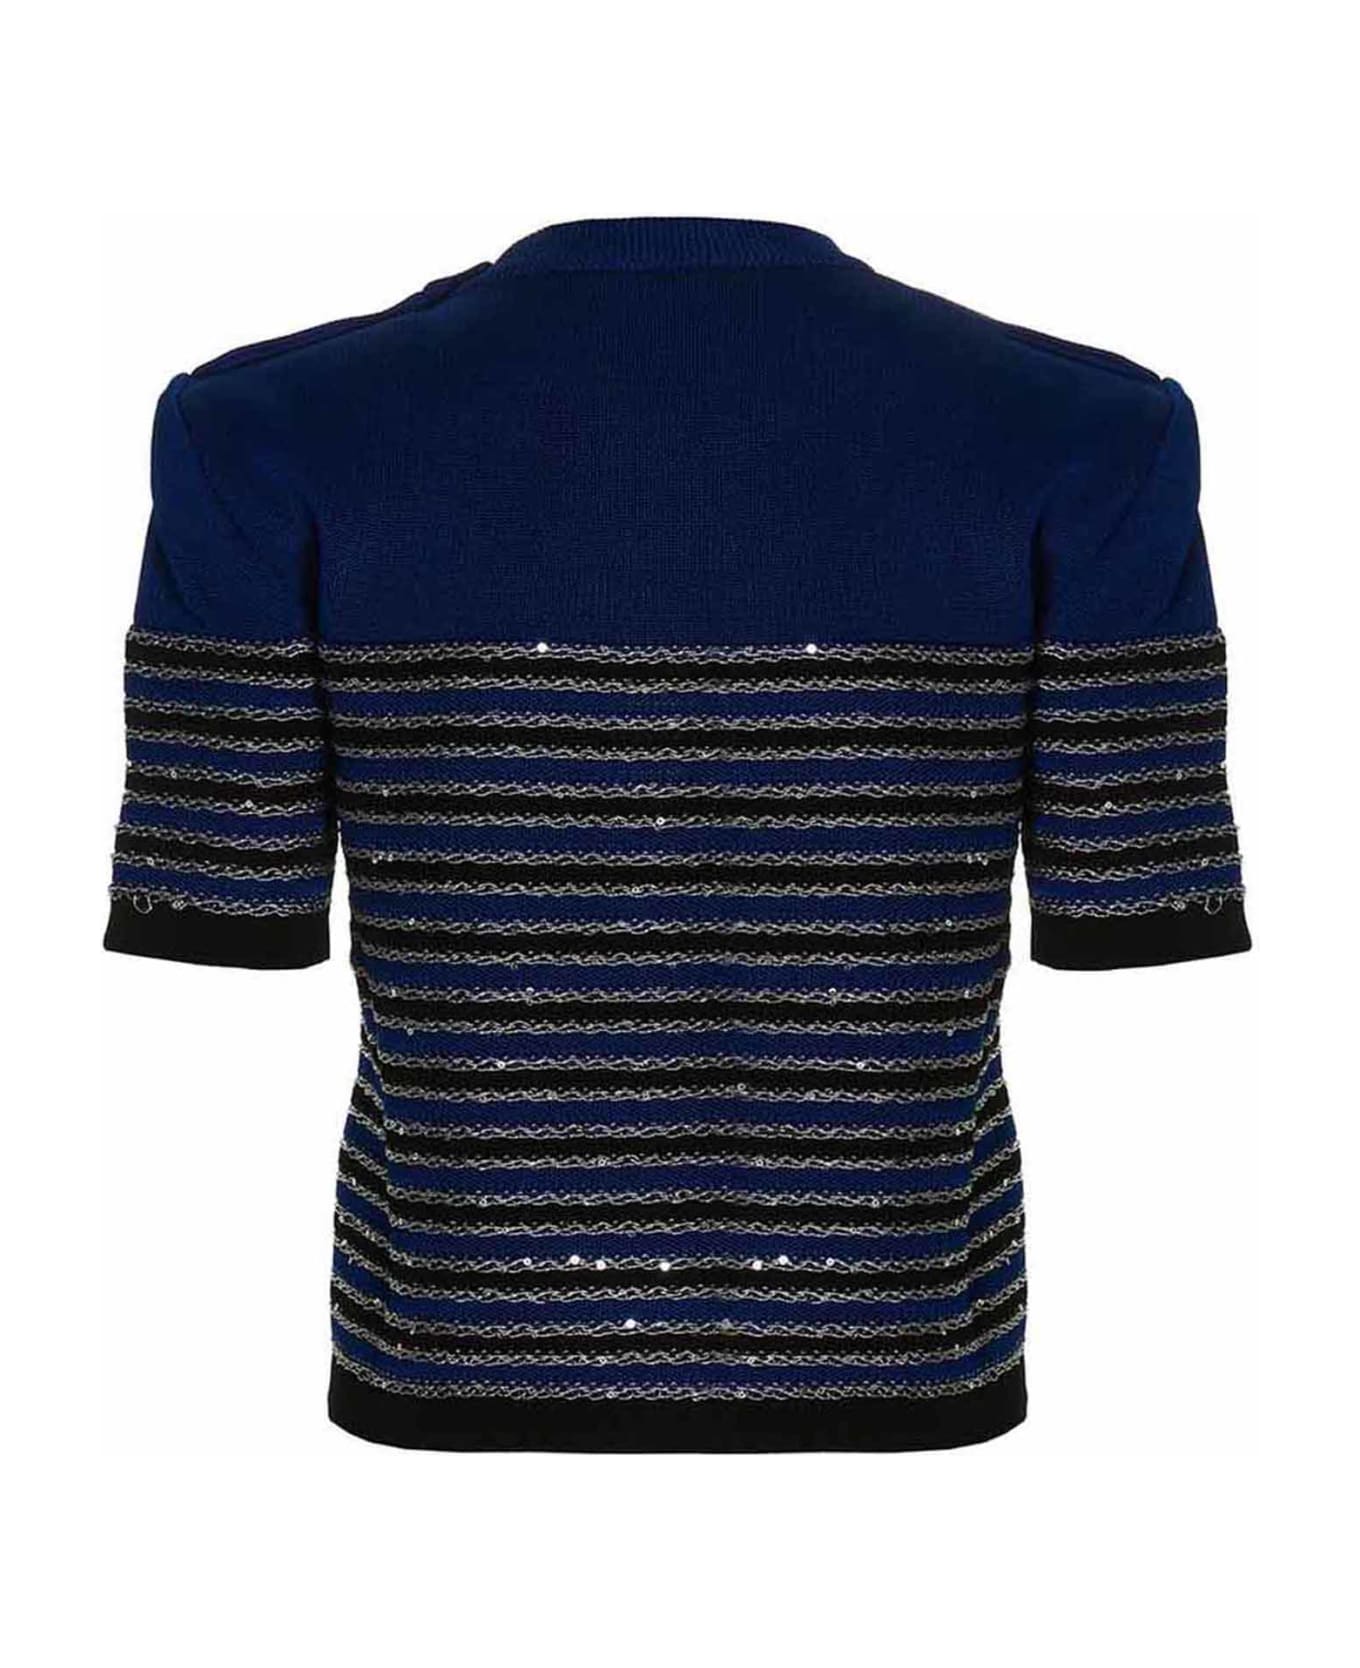 Balmain Striped Knit Top - Blue